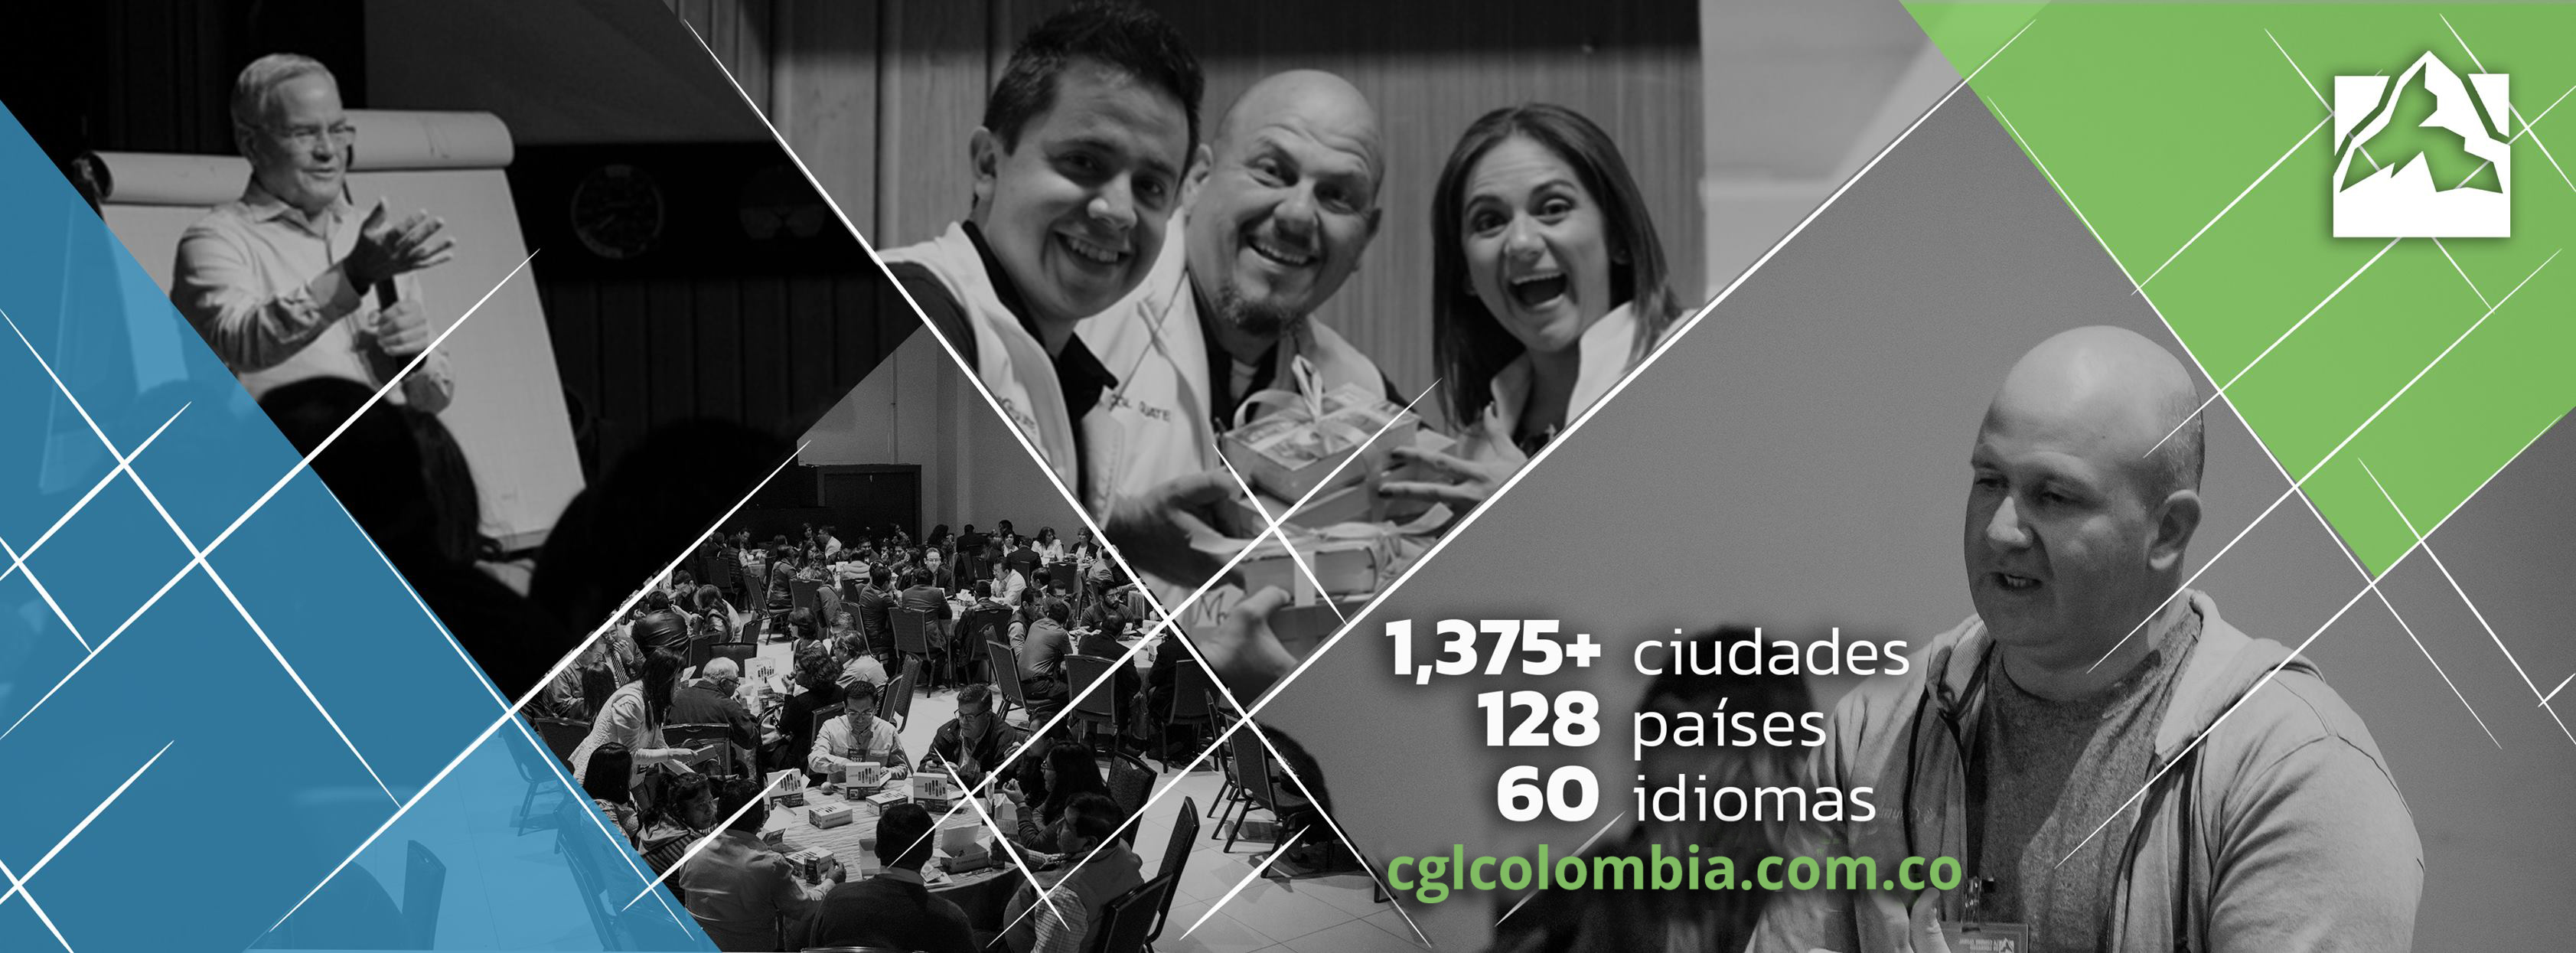 La cumbre global de liderazgo llega a Colombia